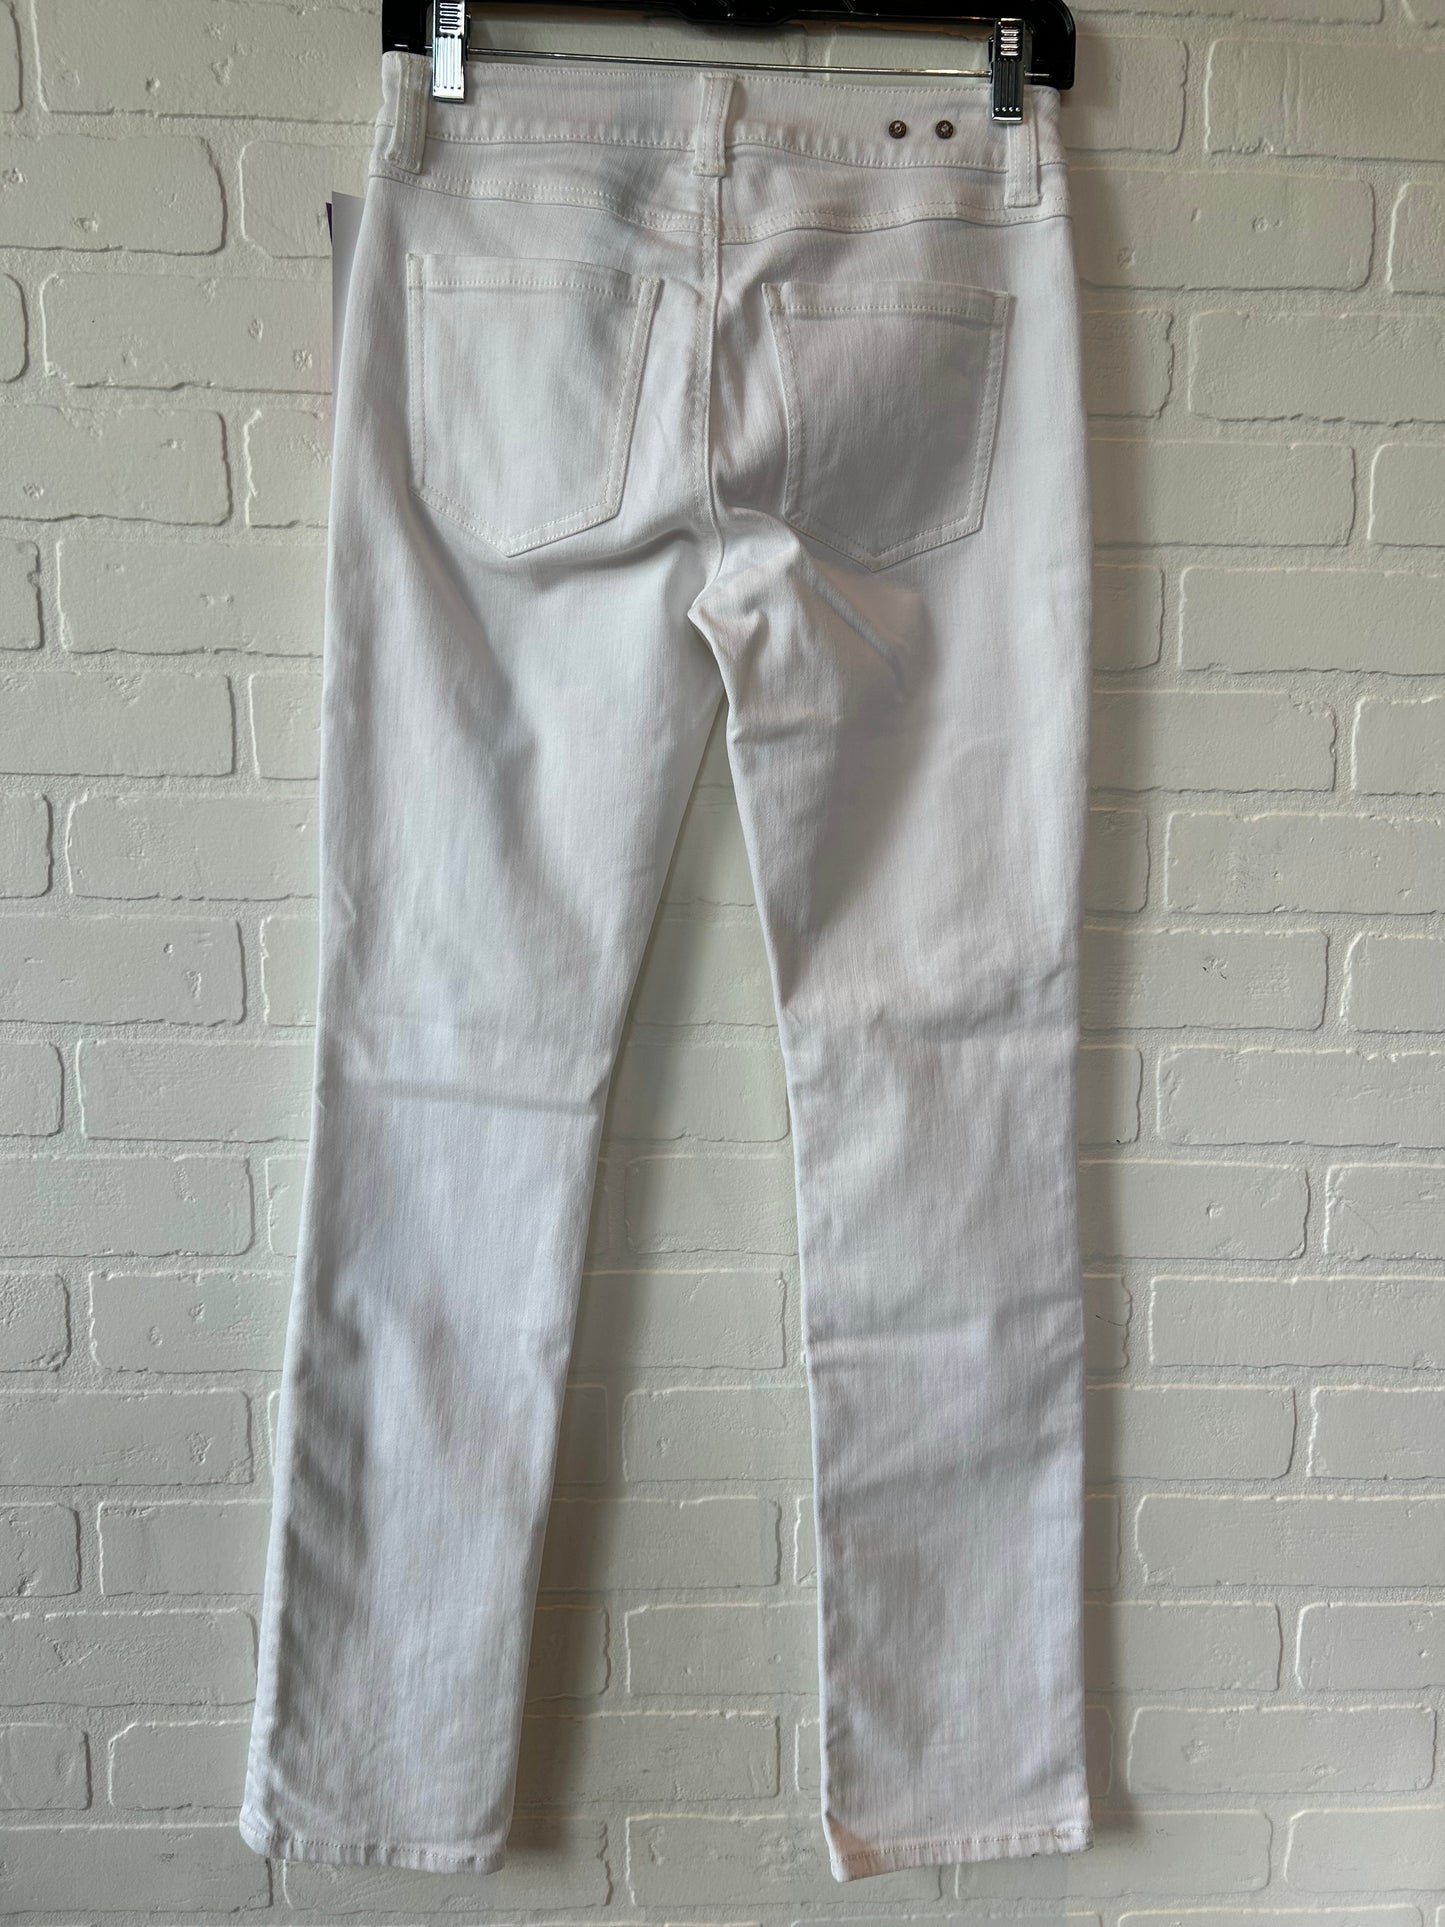 White Denim Jeans Skinny Cabi, Size 0